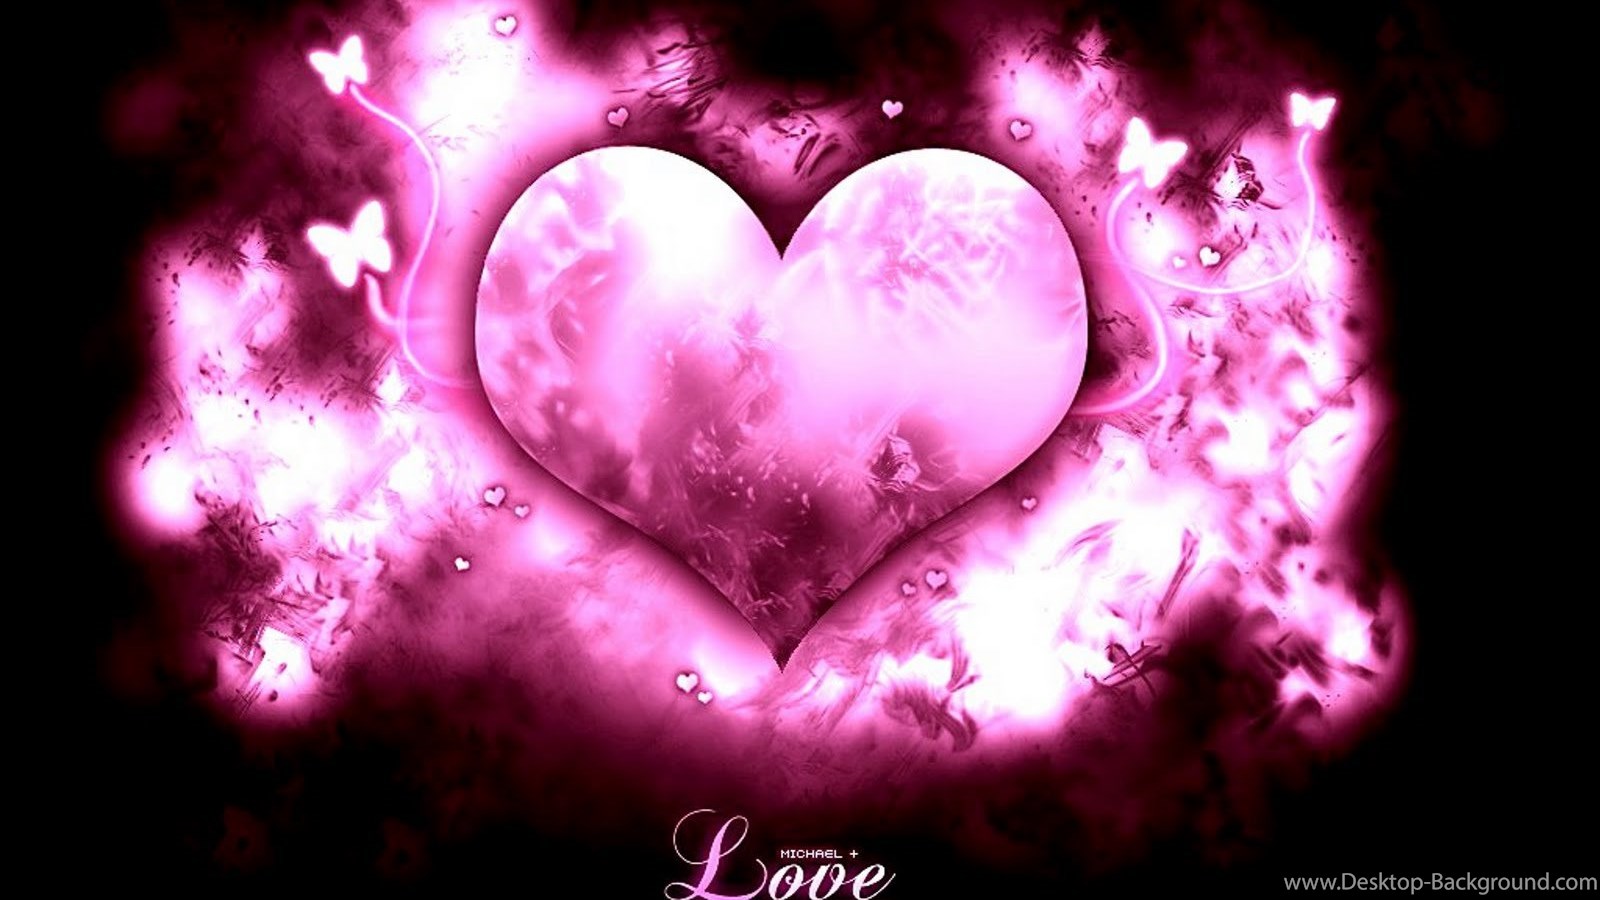 Popular - Bonne Saint Valentin Mon Amour , HD Wallpaper & Backgrounds